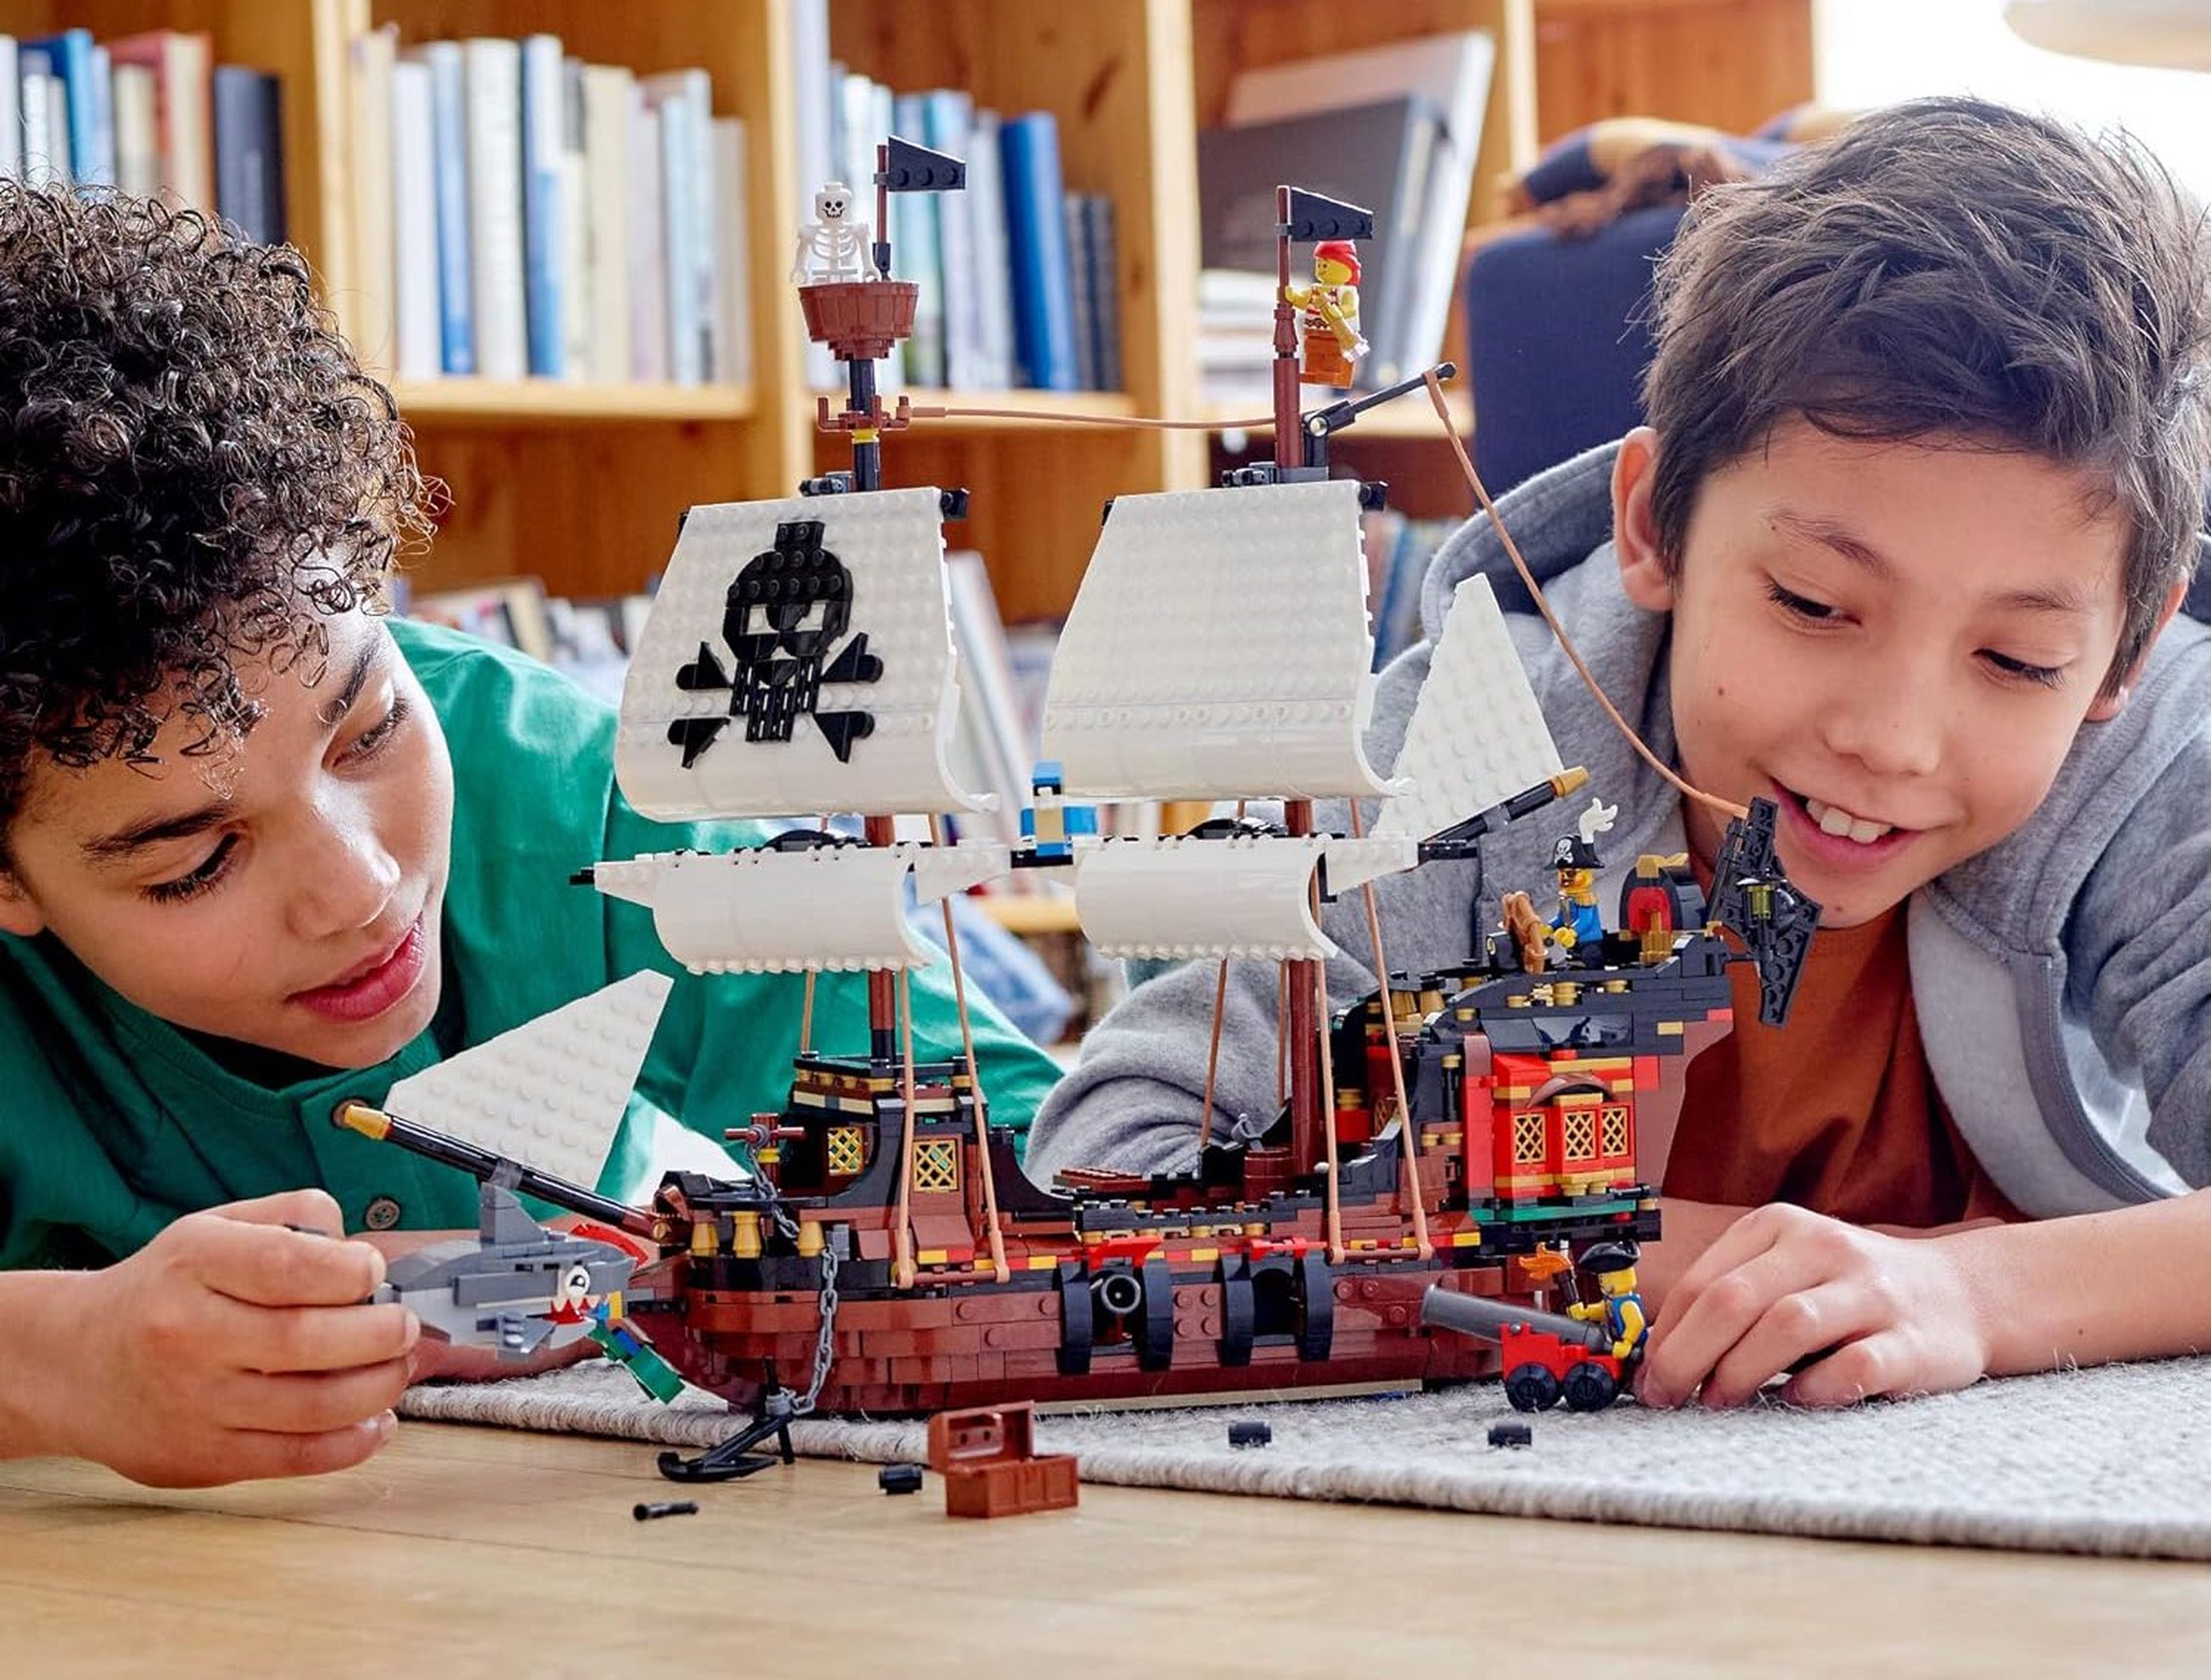 Comprar LEGO-10698 Caja de Ladrillos Creativos Grande LEGO® Barato